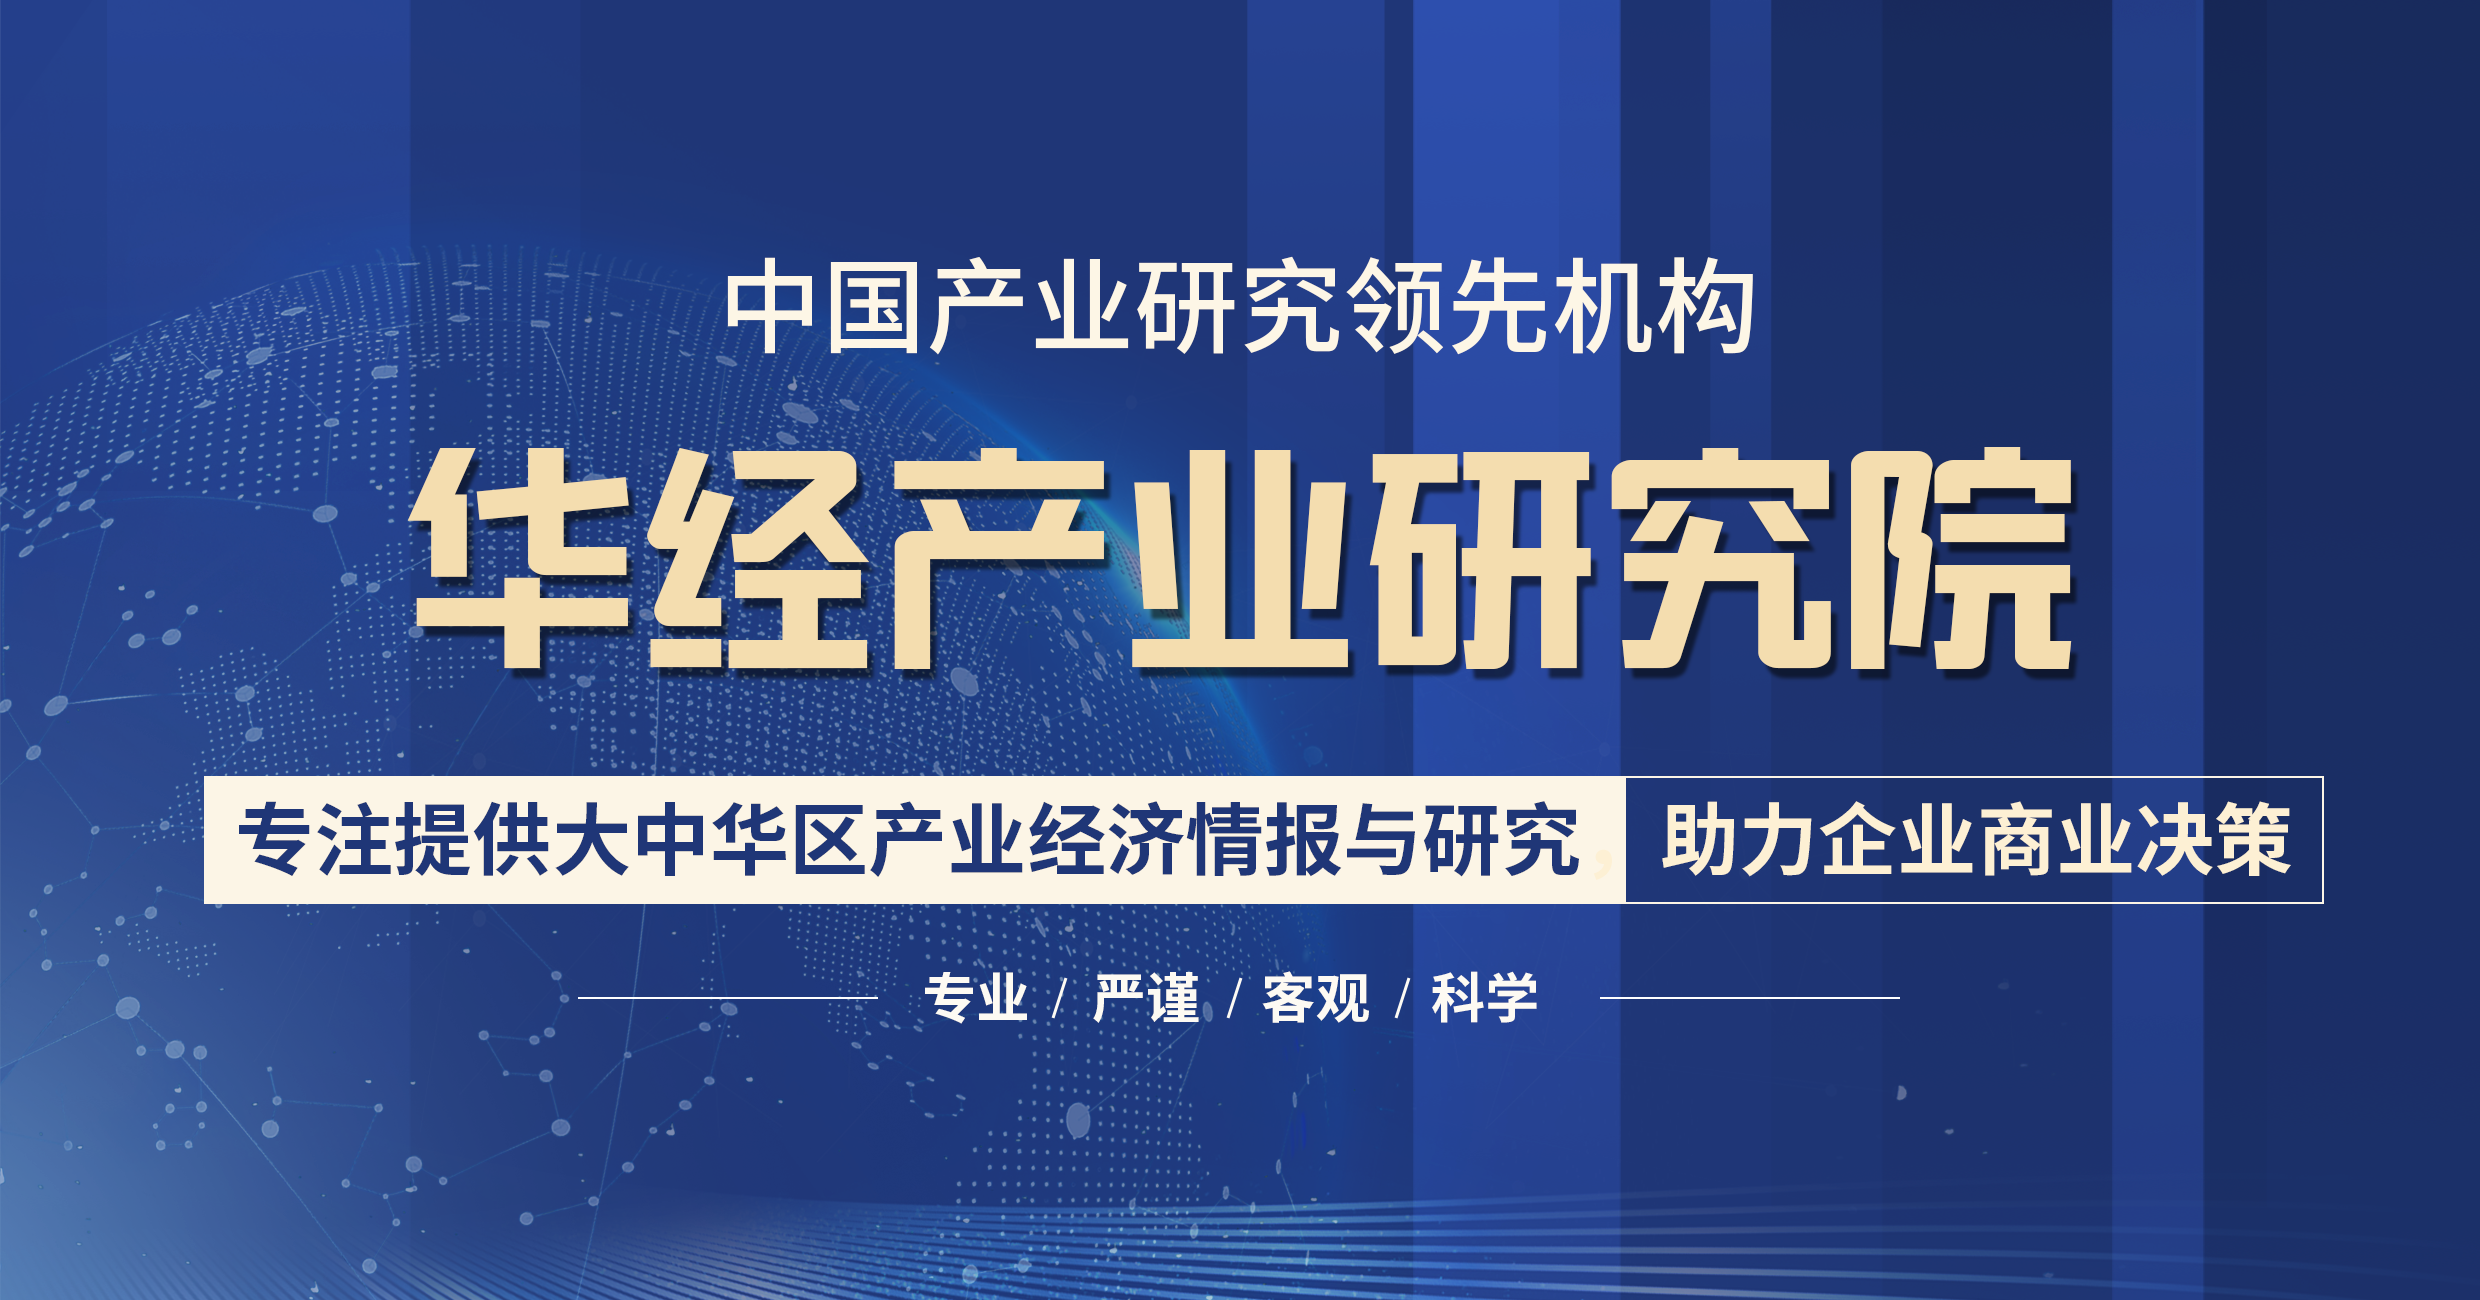 华经产业研究院重磅发布《中国人工智能行业简版分析报告》